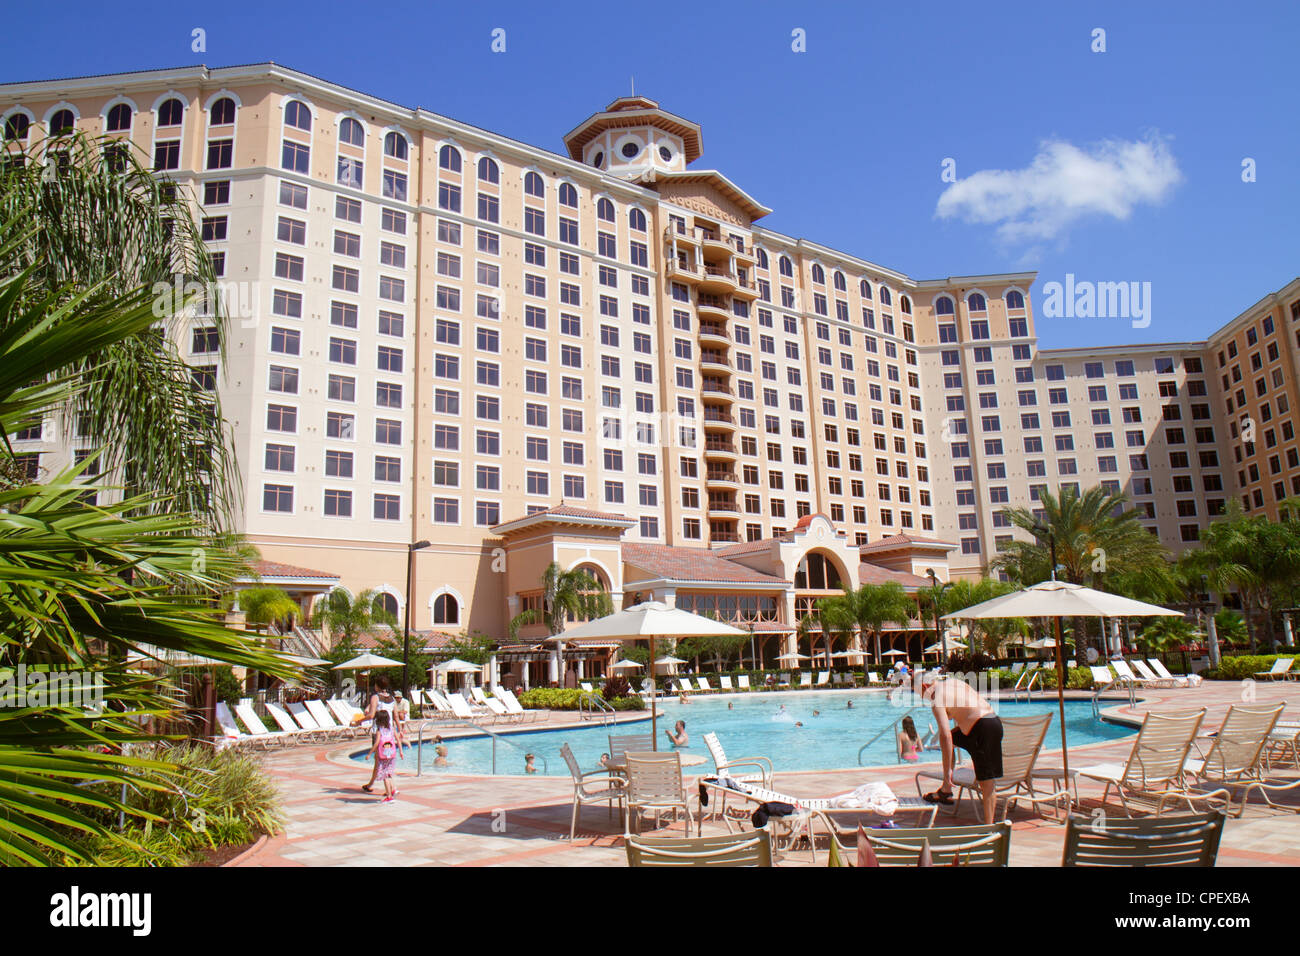 Orlando Florida, Rosen Shingle Creek Water, hôtel hôtels hôtels hôtels motels Inn motel, complexe, extérieur avant, entrée, propriété, piscine, homme hommes Banque D'Images